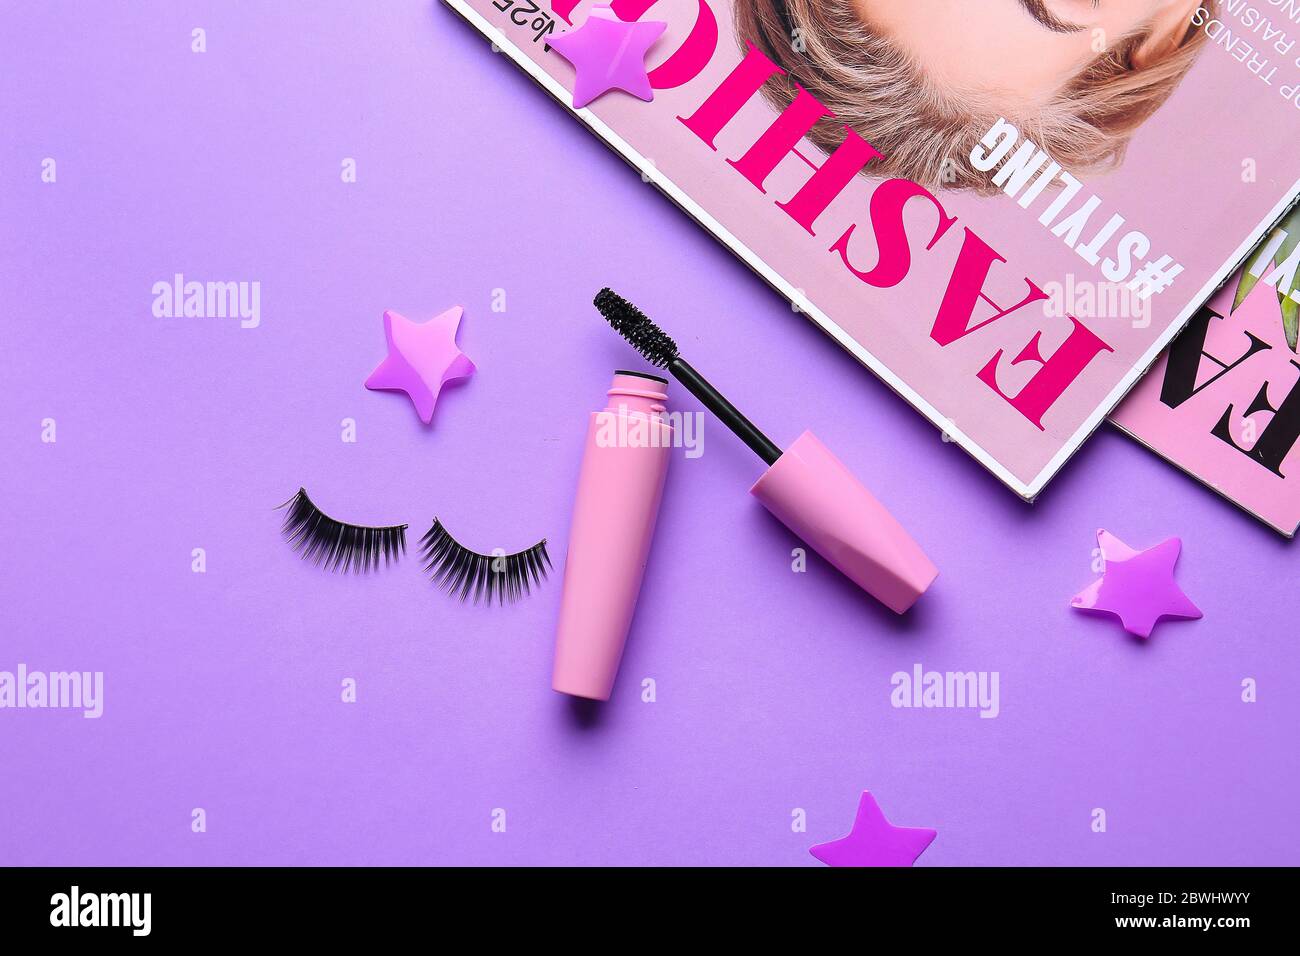 Mascara with fake eyelashes and fashion magazines on color background Stock Photo